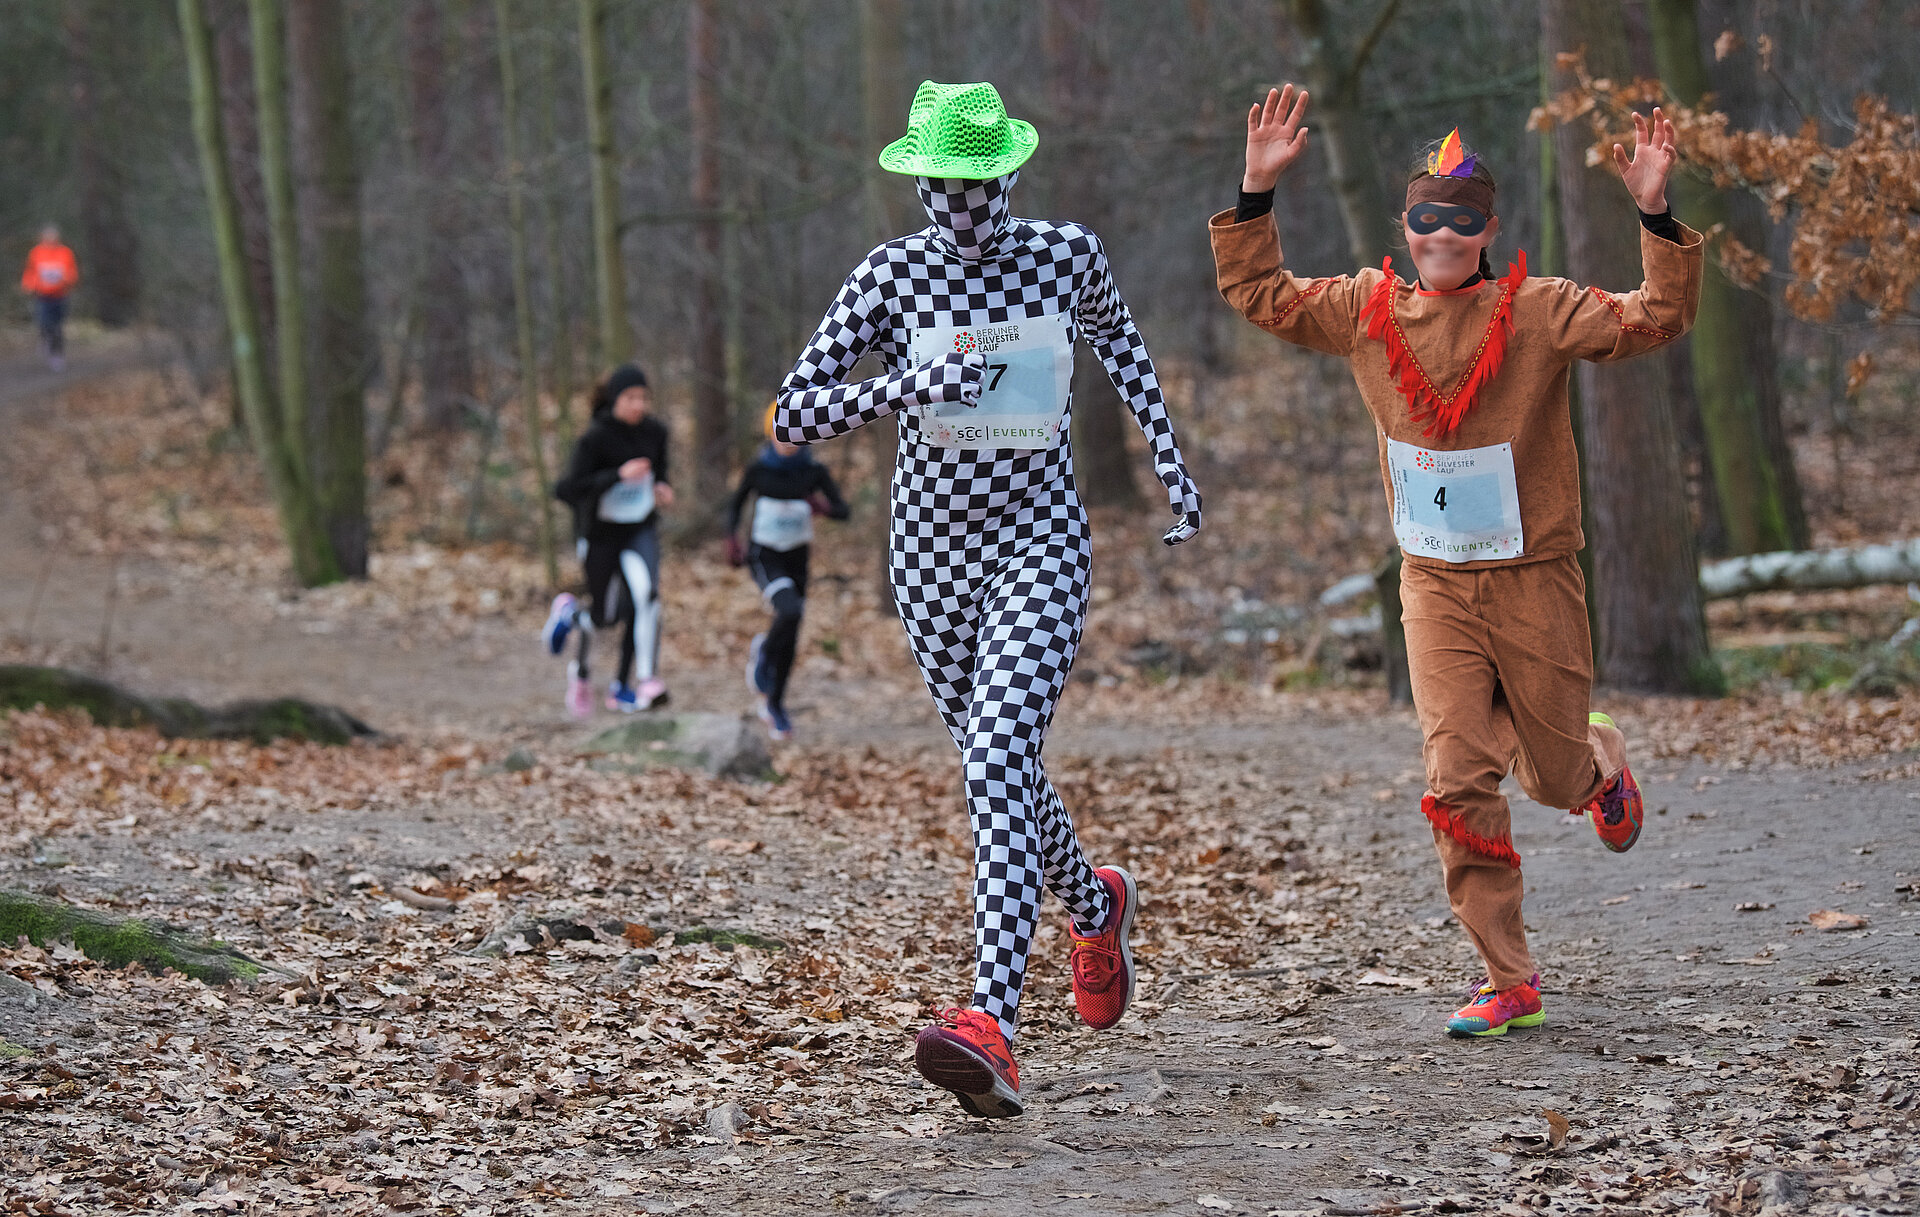 Berliner Silvesterlauf: Läufer:innen im Indianerkostüm sowie karierten Ganzkörper-Trikot mit Gesichtshaube auf der Strecke durch den Wald @ SCC EVENTS / Tilo Wiedensohler